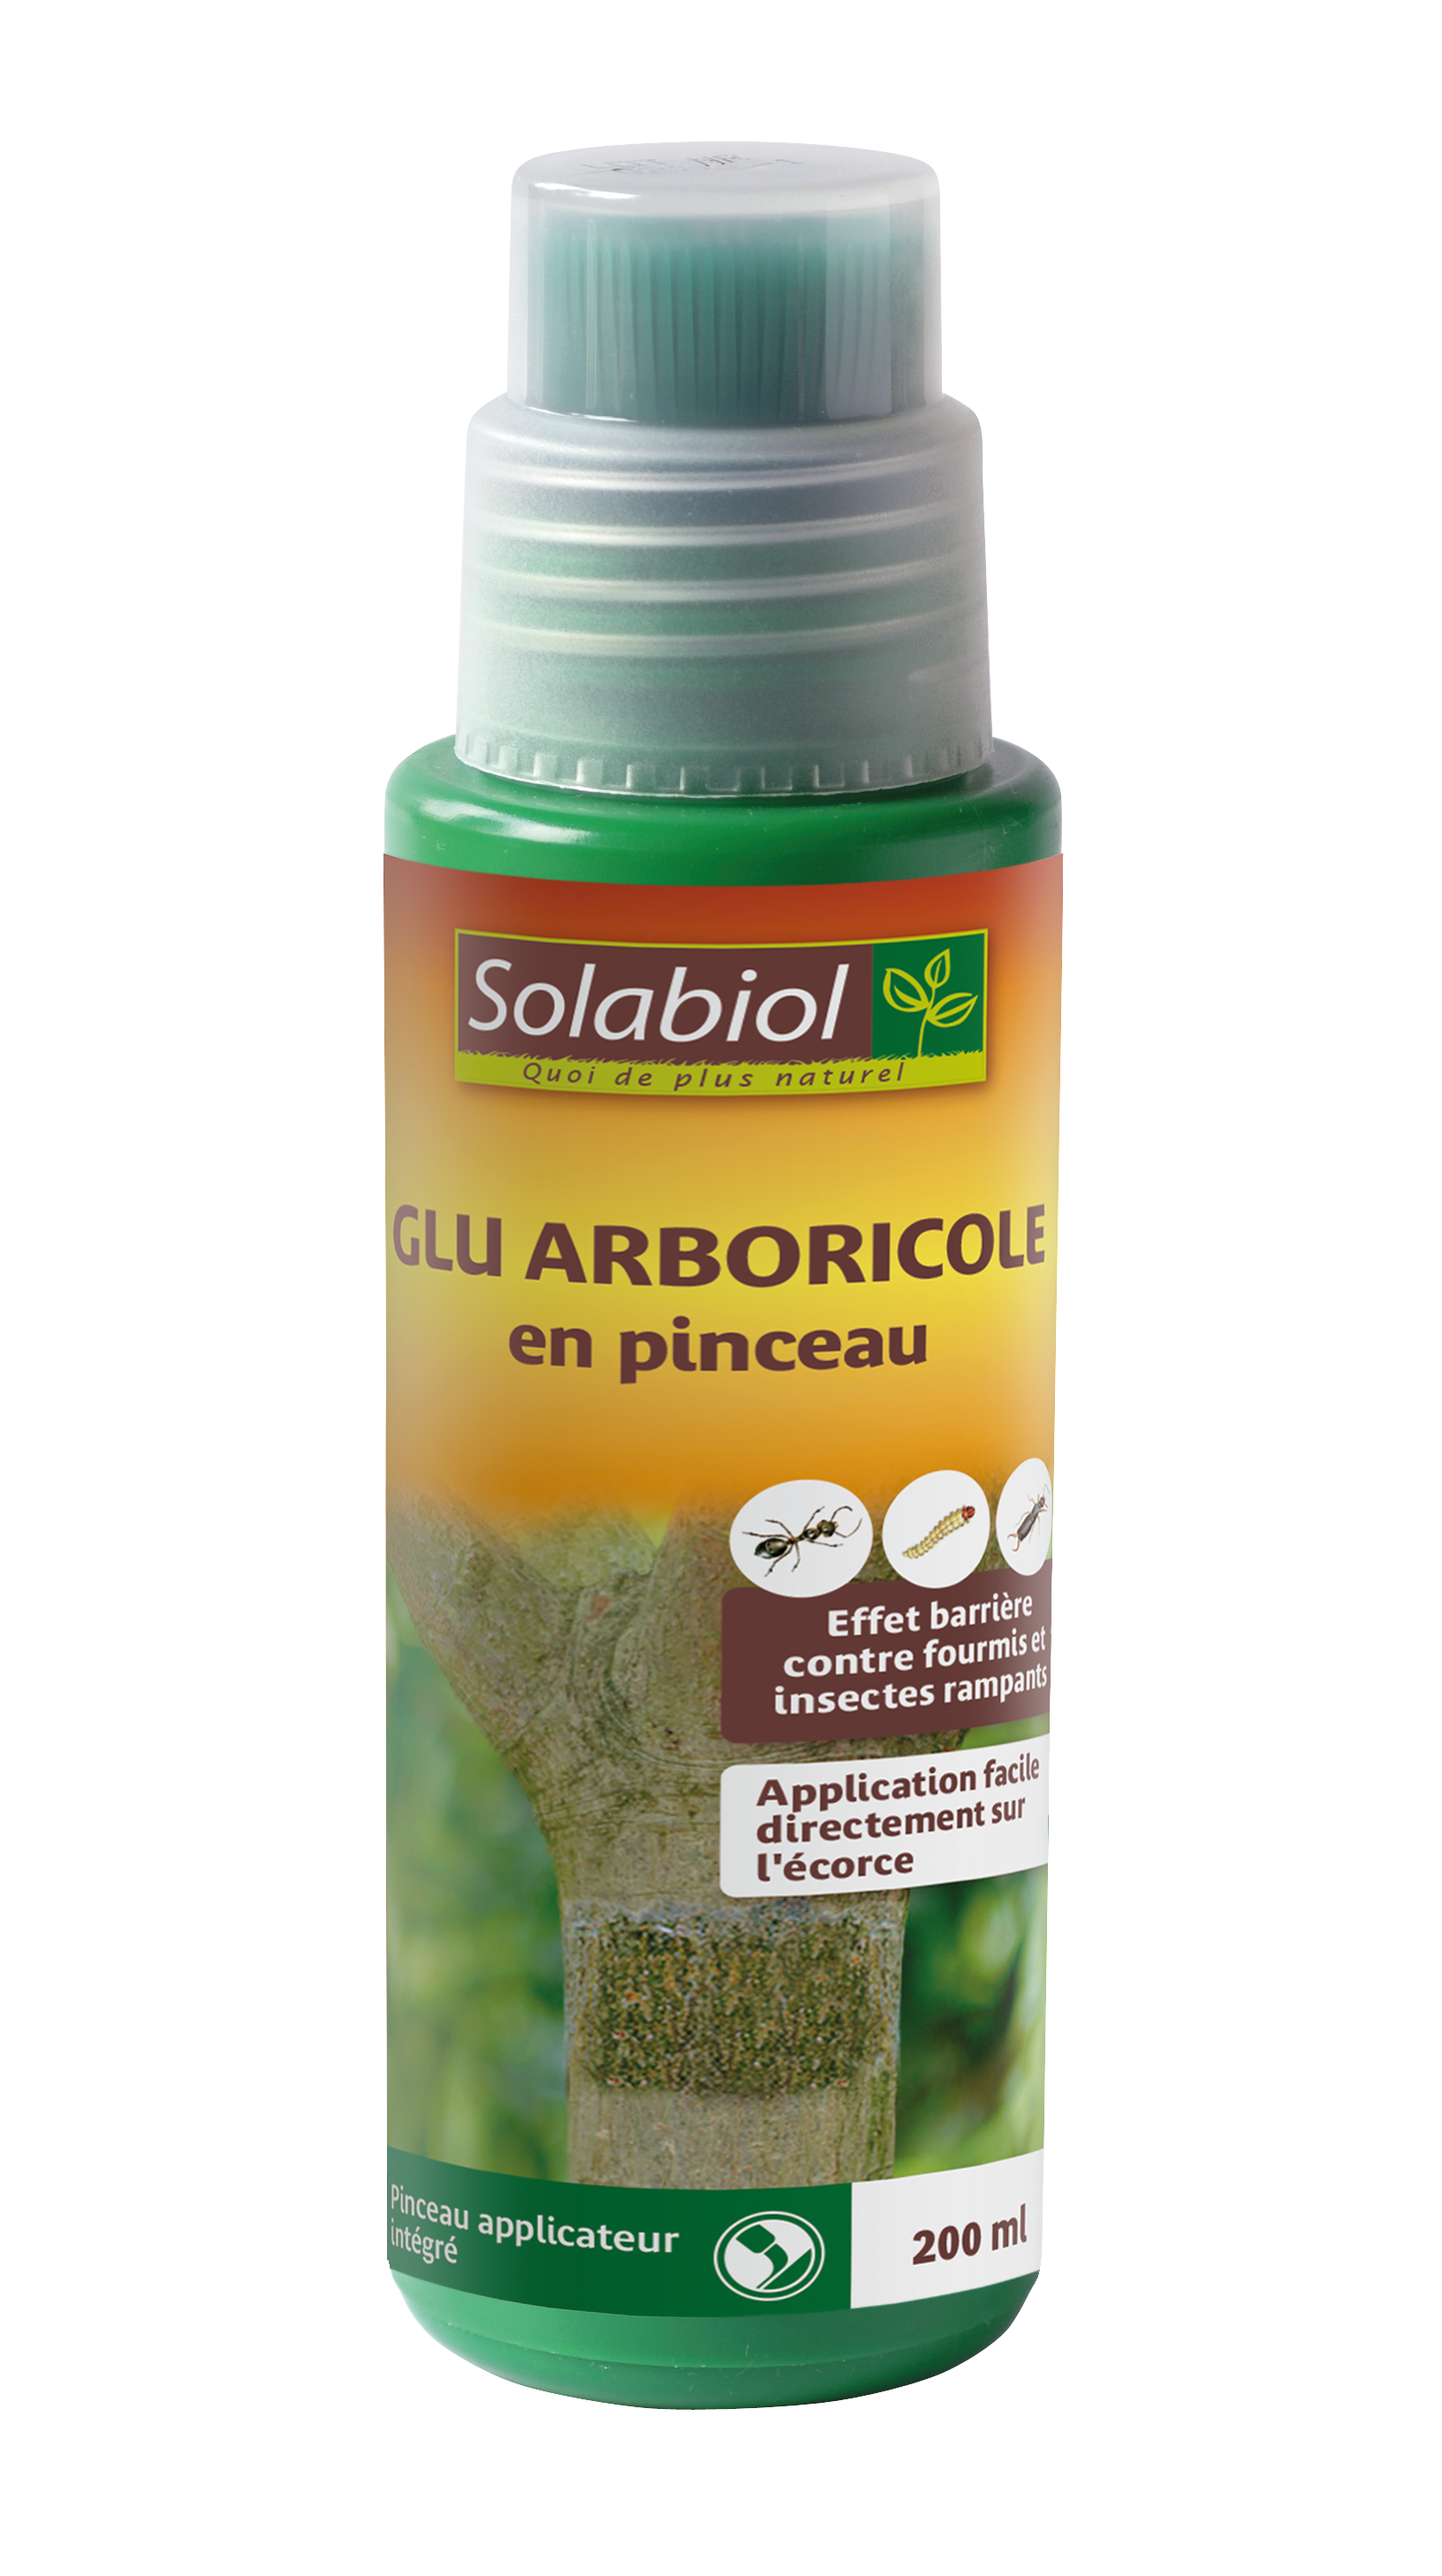 Soglu2 | glu arboricole | 200 ml | efficace contre fourmis, pucerons,